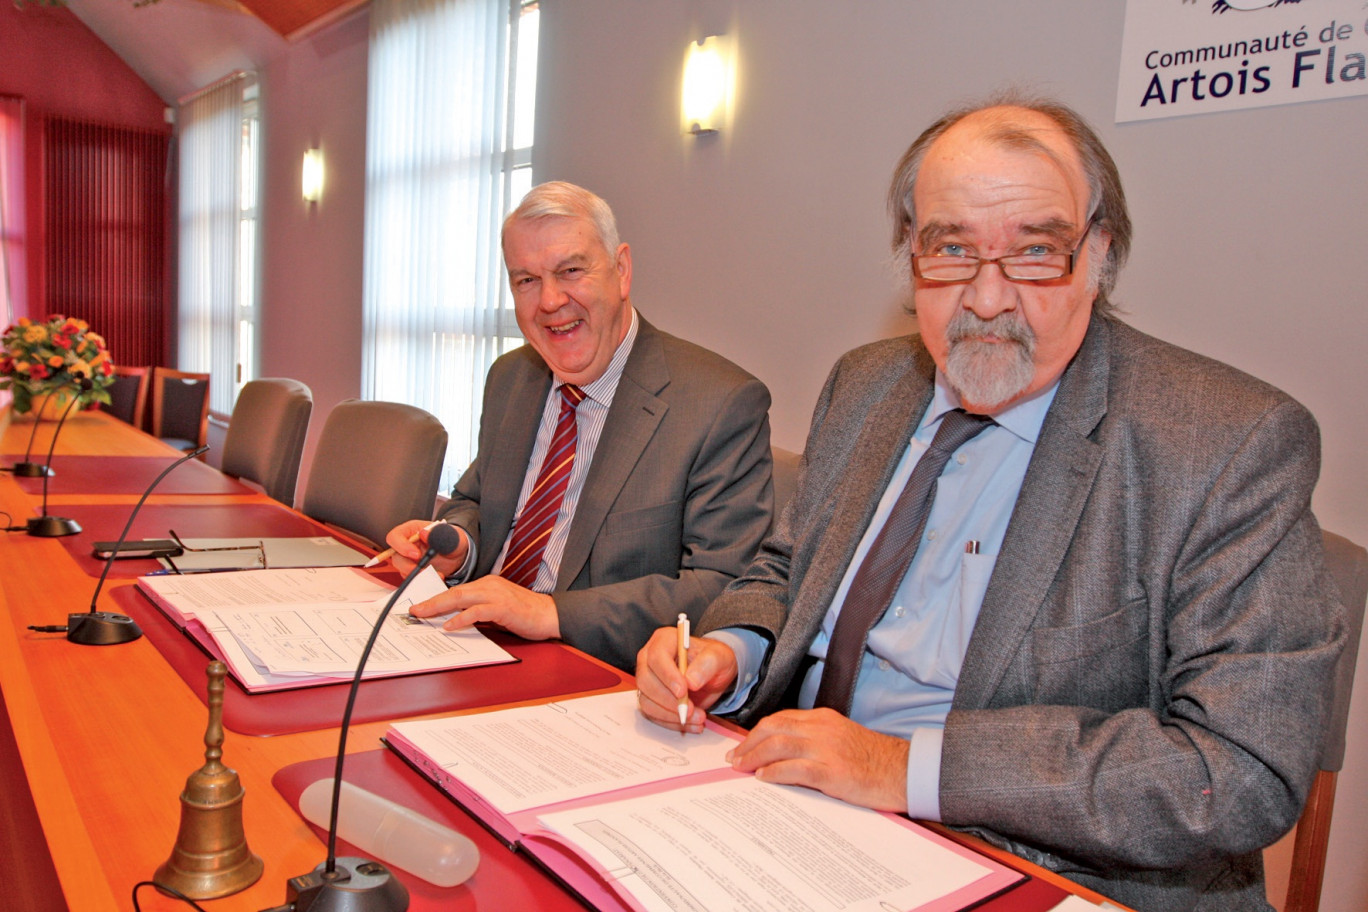 Jacques Napieraj et Pierre Duriez ont signé la convention de partenariat qui lie leurs organismes pour l’année 2012.